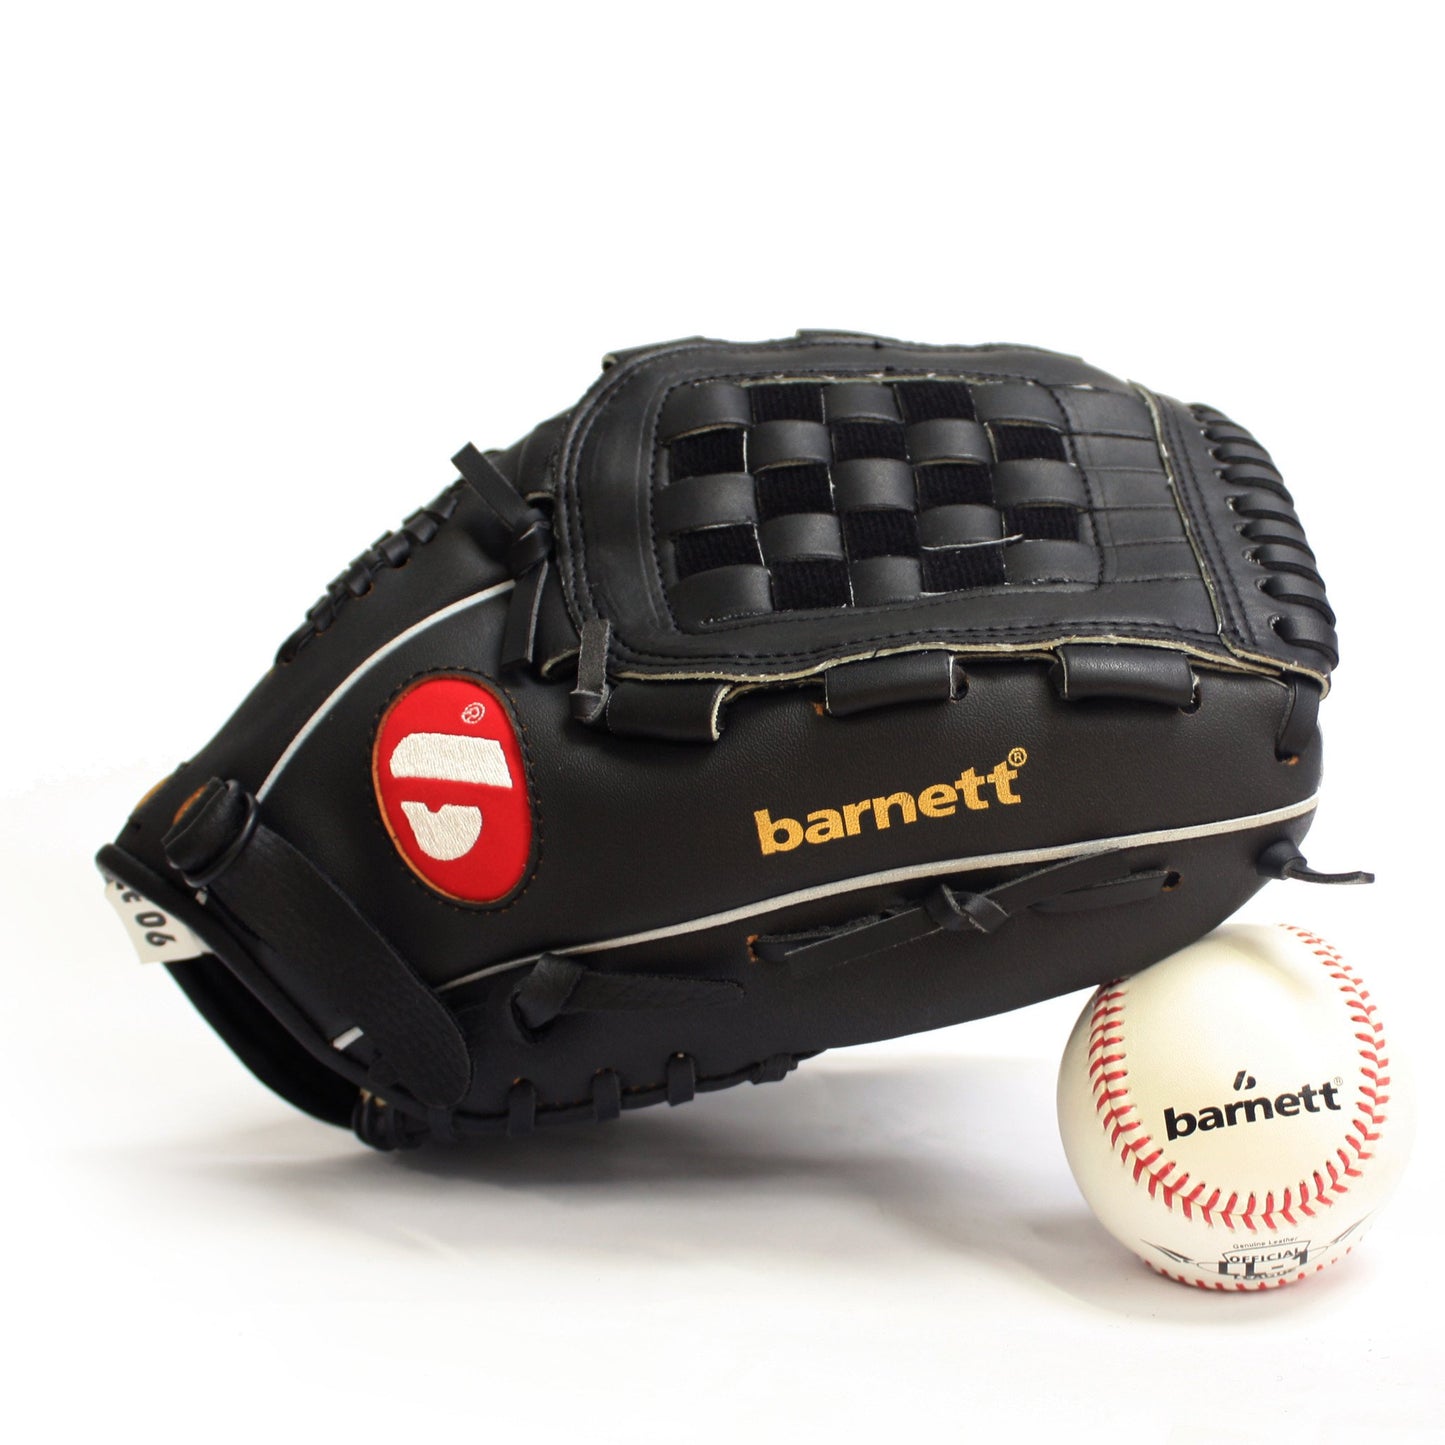 BGBW-3 Baseballová sada, junior – míč, rukavice, pálka (BB-W 25, JL-110, BS-1)